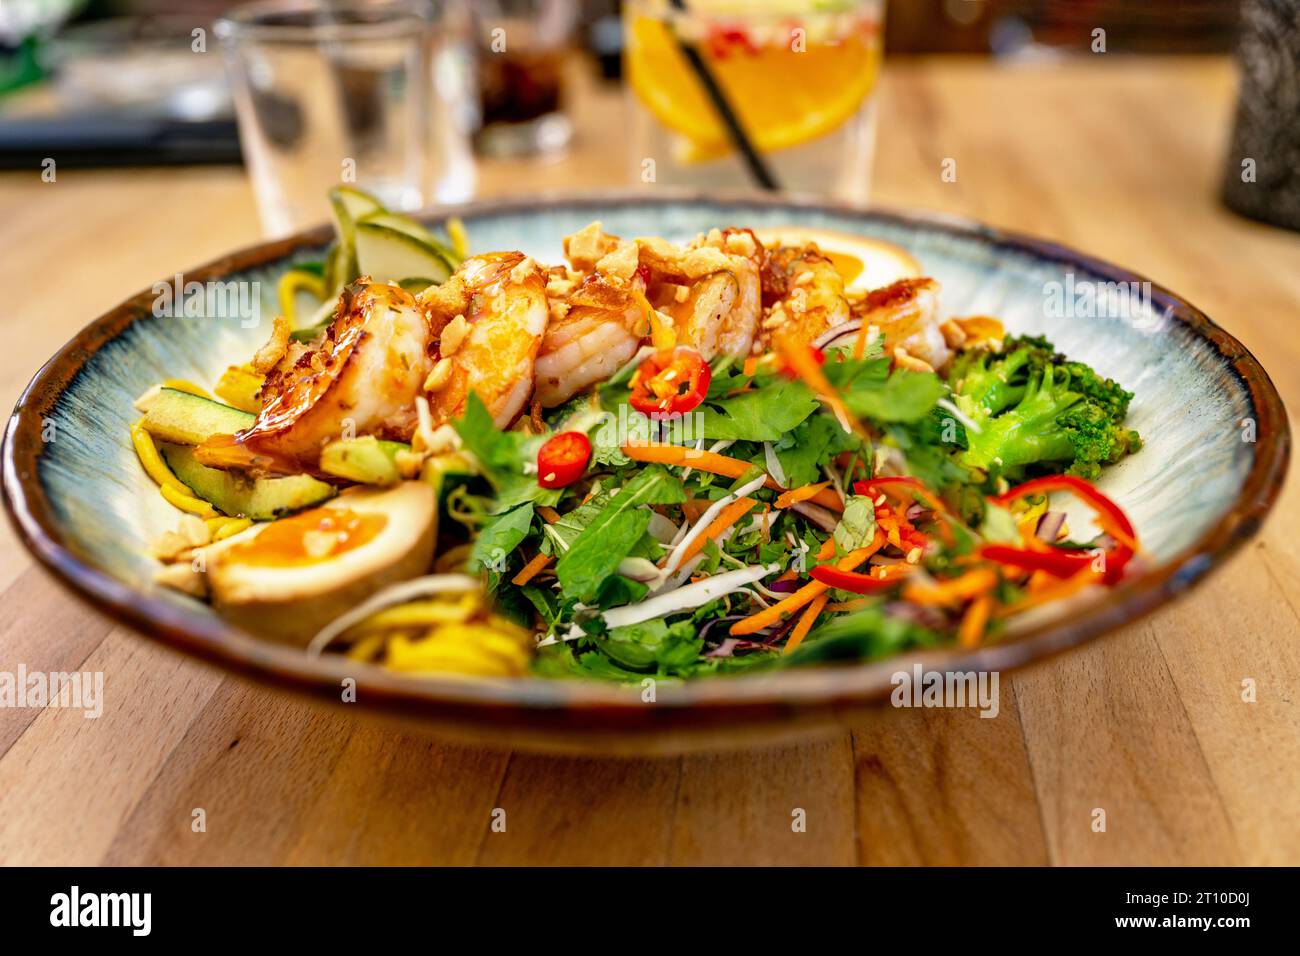 Insalata di erbe asiatiche agrodolci, uova sode e gamberi con peperoncino al piatto, drink in bicchiere, cena al tavolo del ristorante. Foto Stock